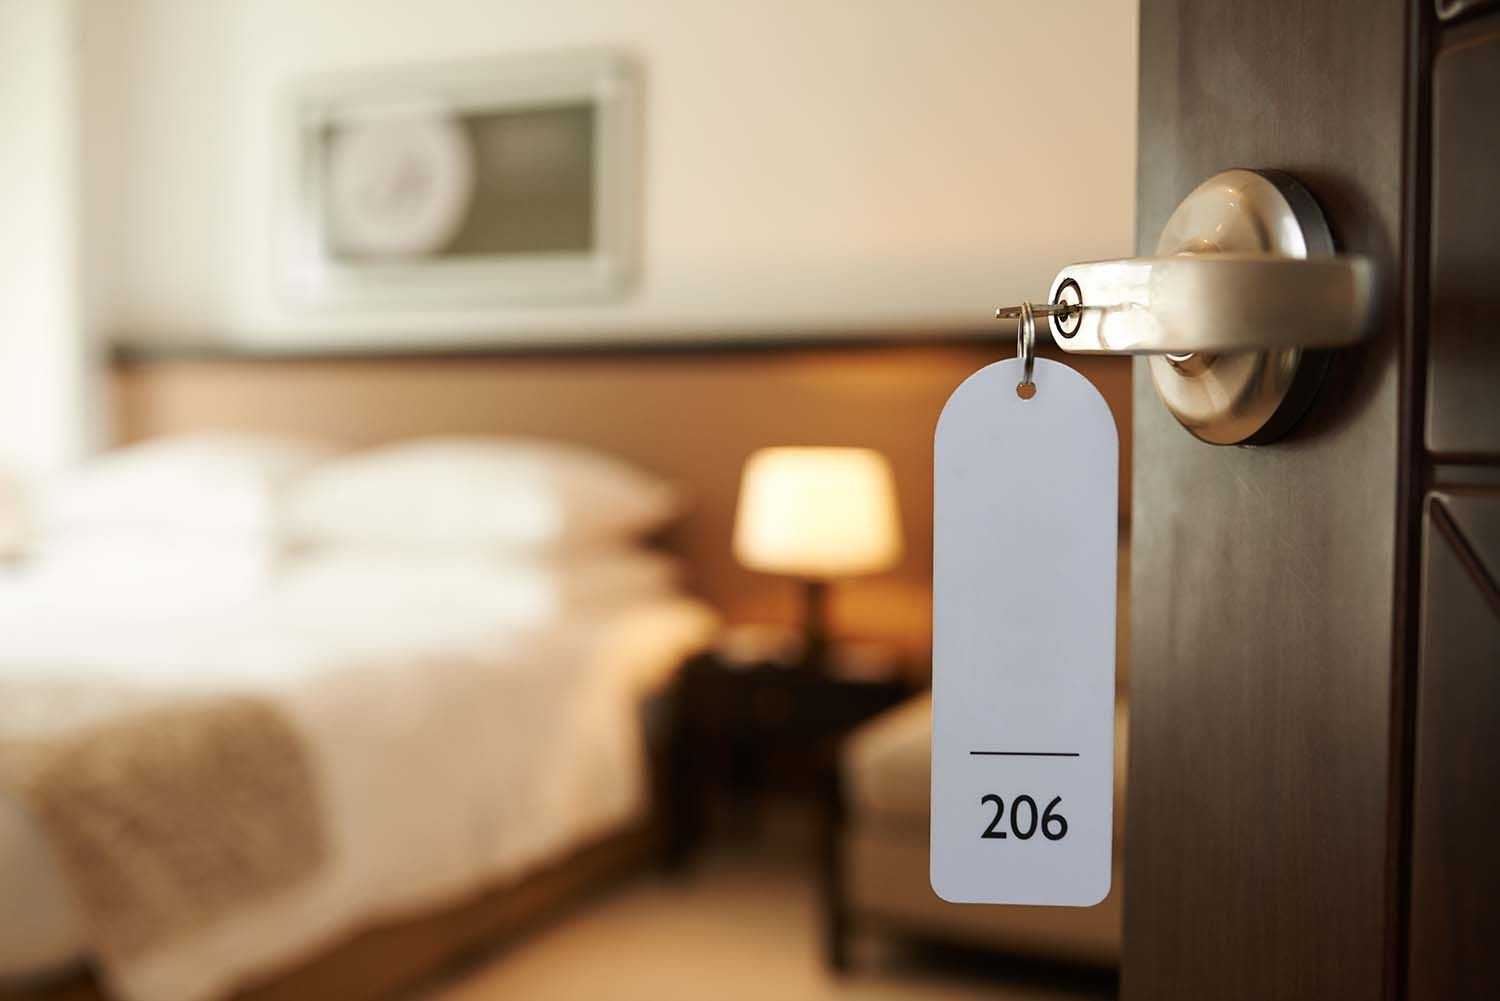 Auf dem Bild ist ein Hotelzimmer zu sehen, dessen Nummer 206 ist.